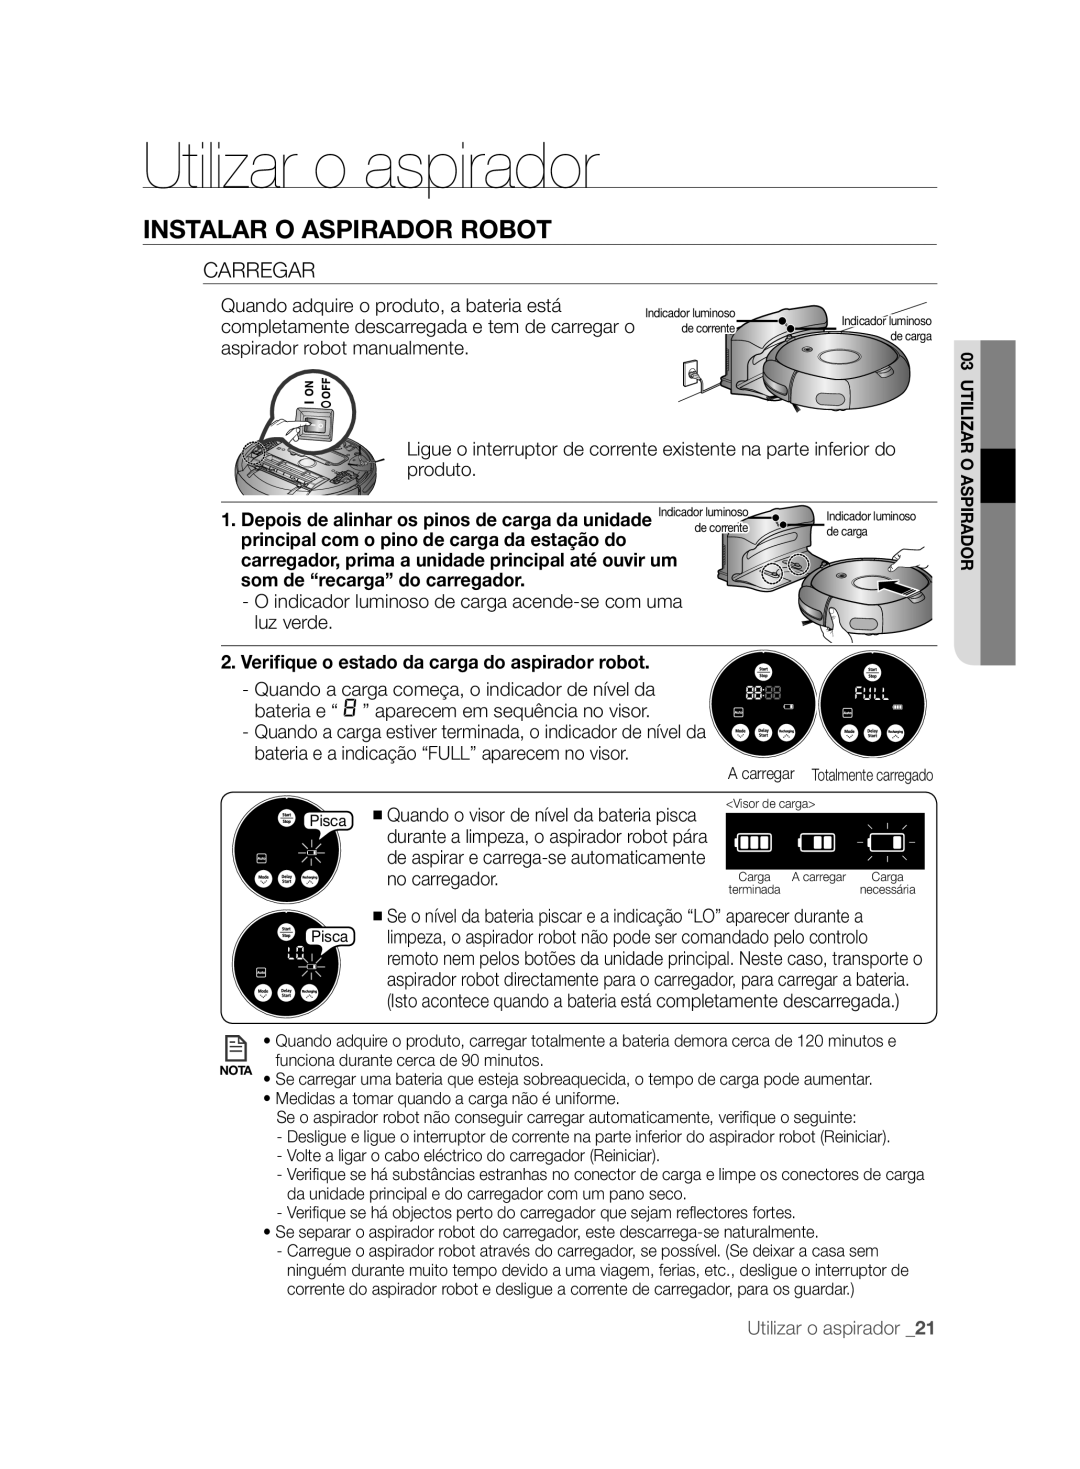 Samsung VCR8828T3B/XEF manual Carregar, Veriﬁque o estado da carga do aspirador robot 